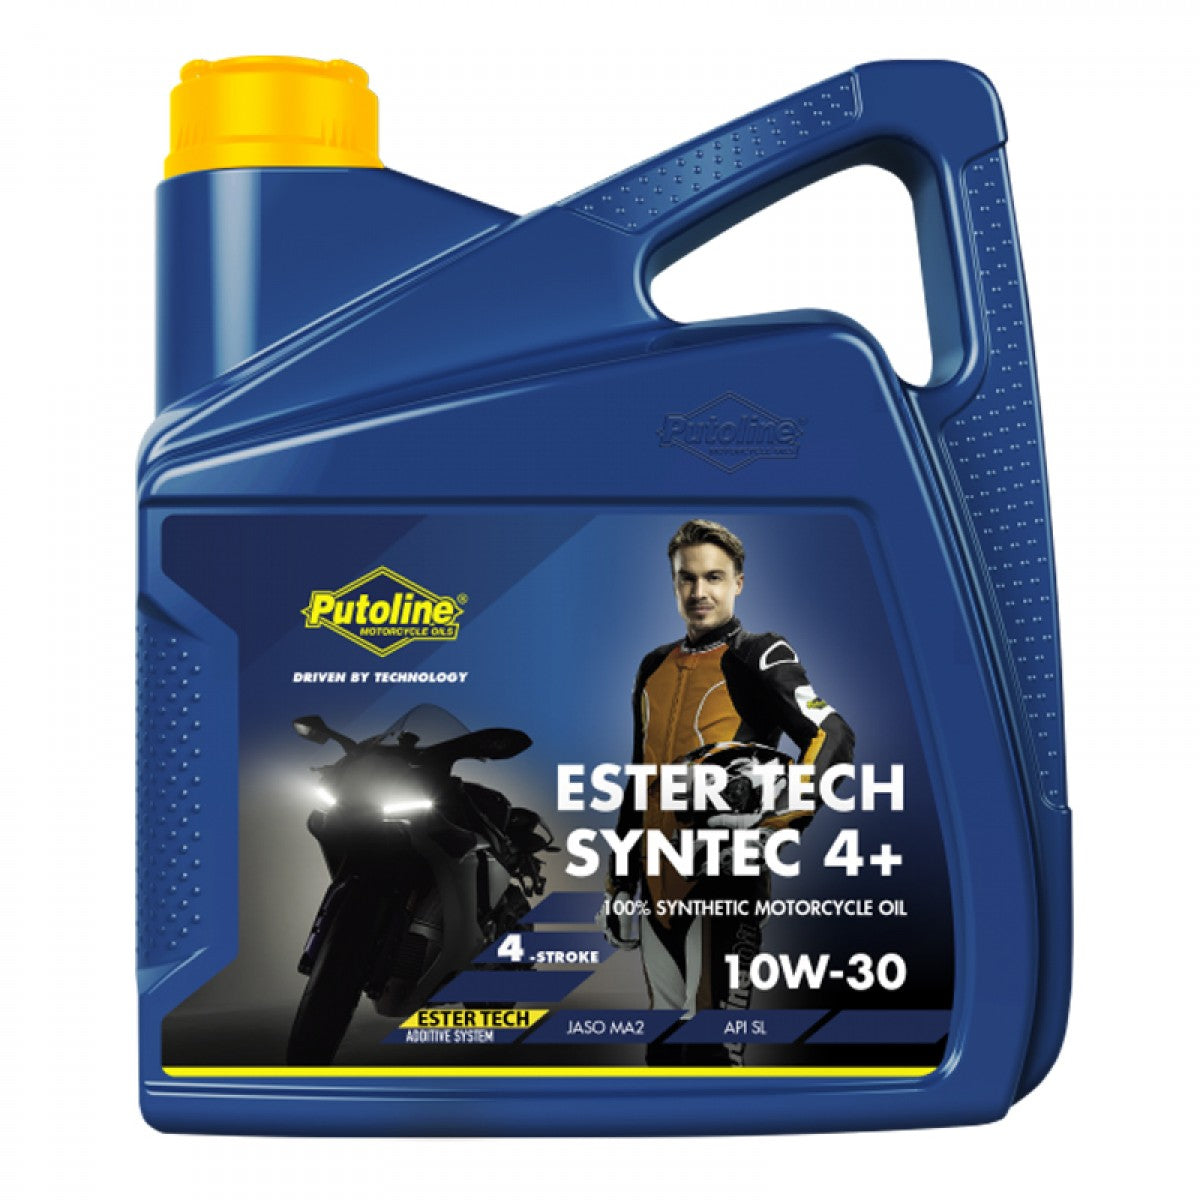 Putoline - Ester Tech Syntec 4+ 10W30 Oil